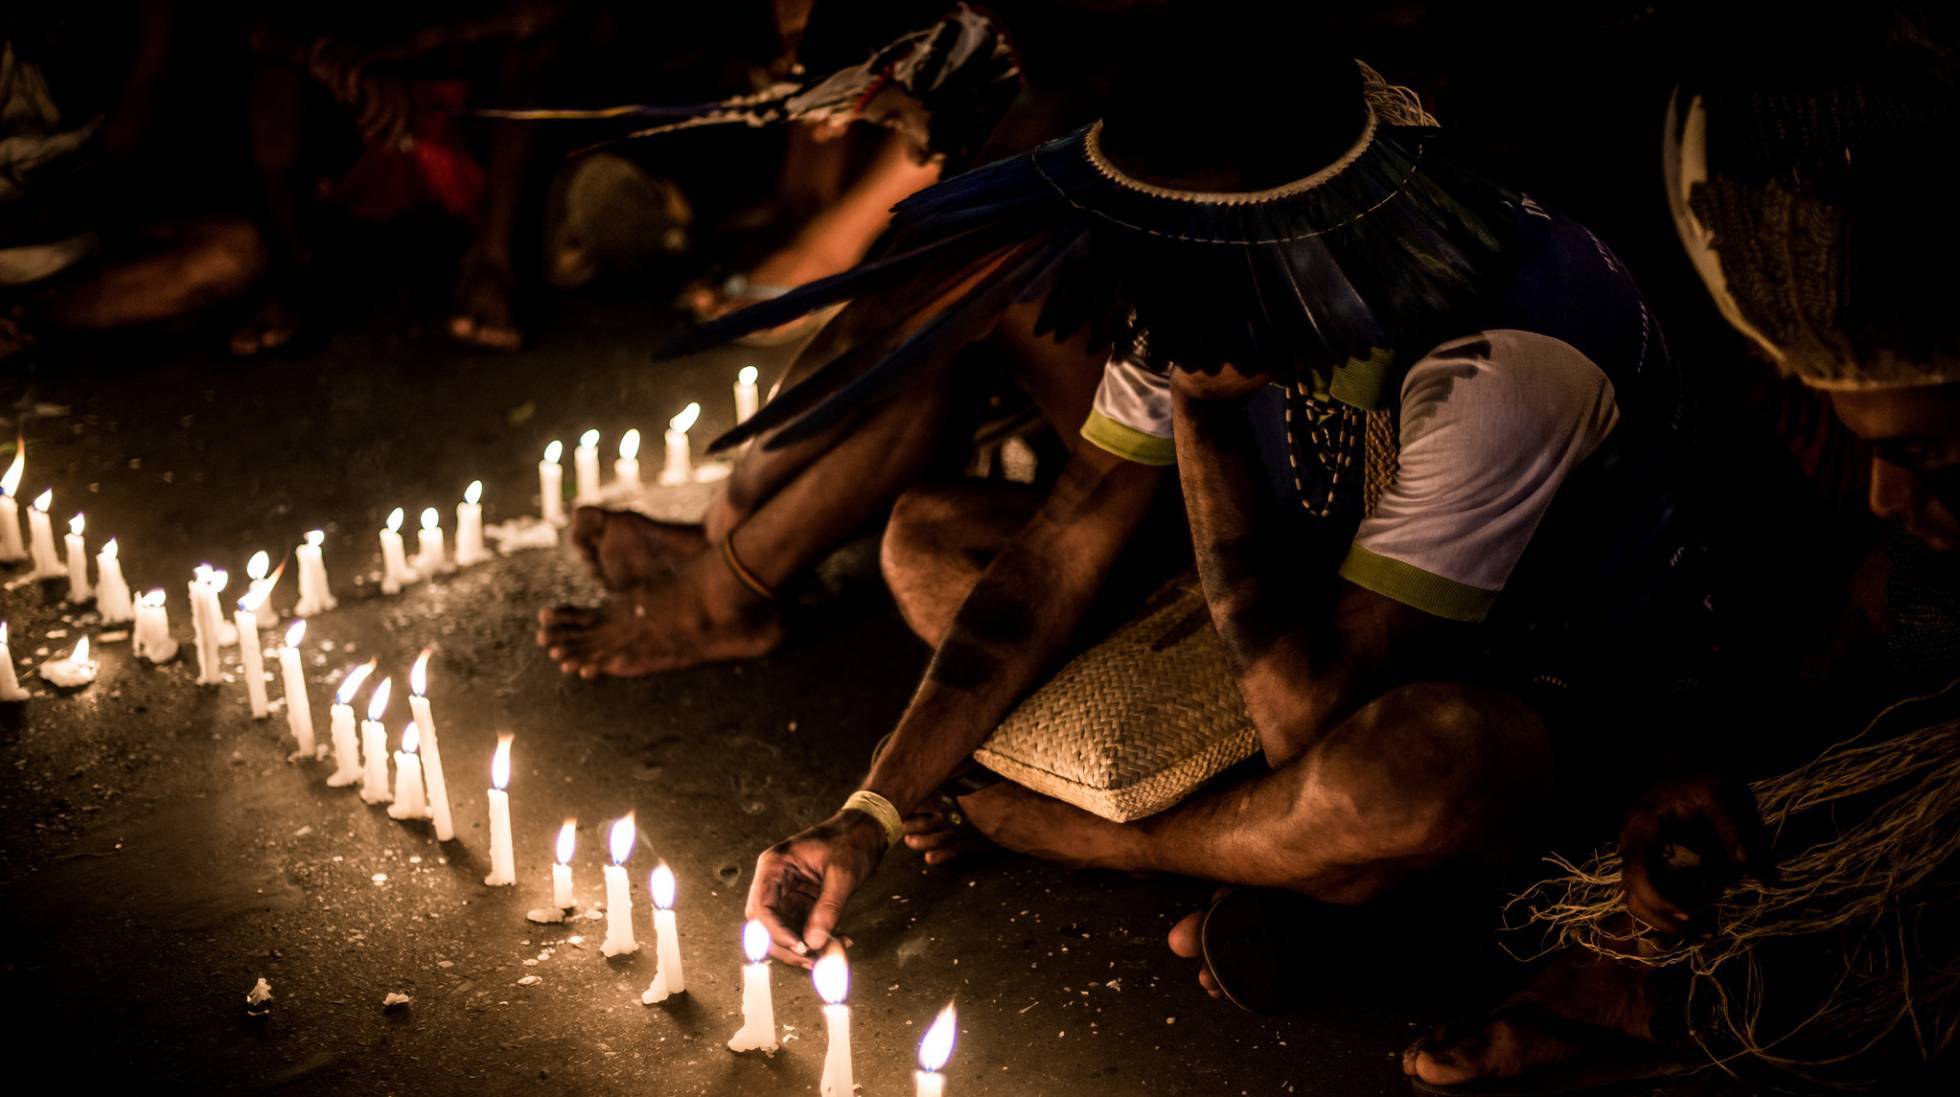 Morte de cacique no Maranhão é novo capítulo de invasões na região, segundo indígenas